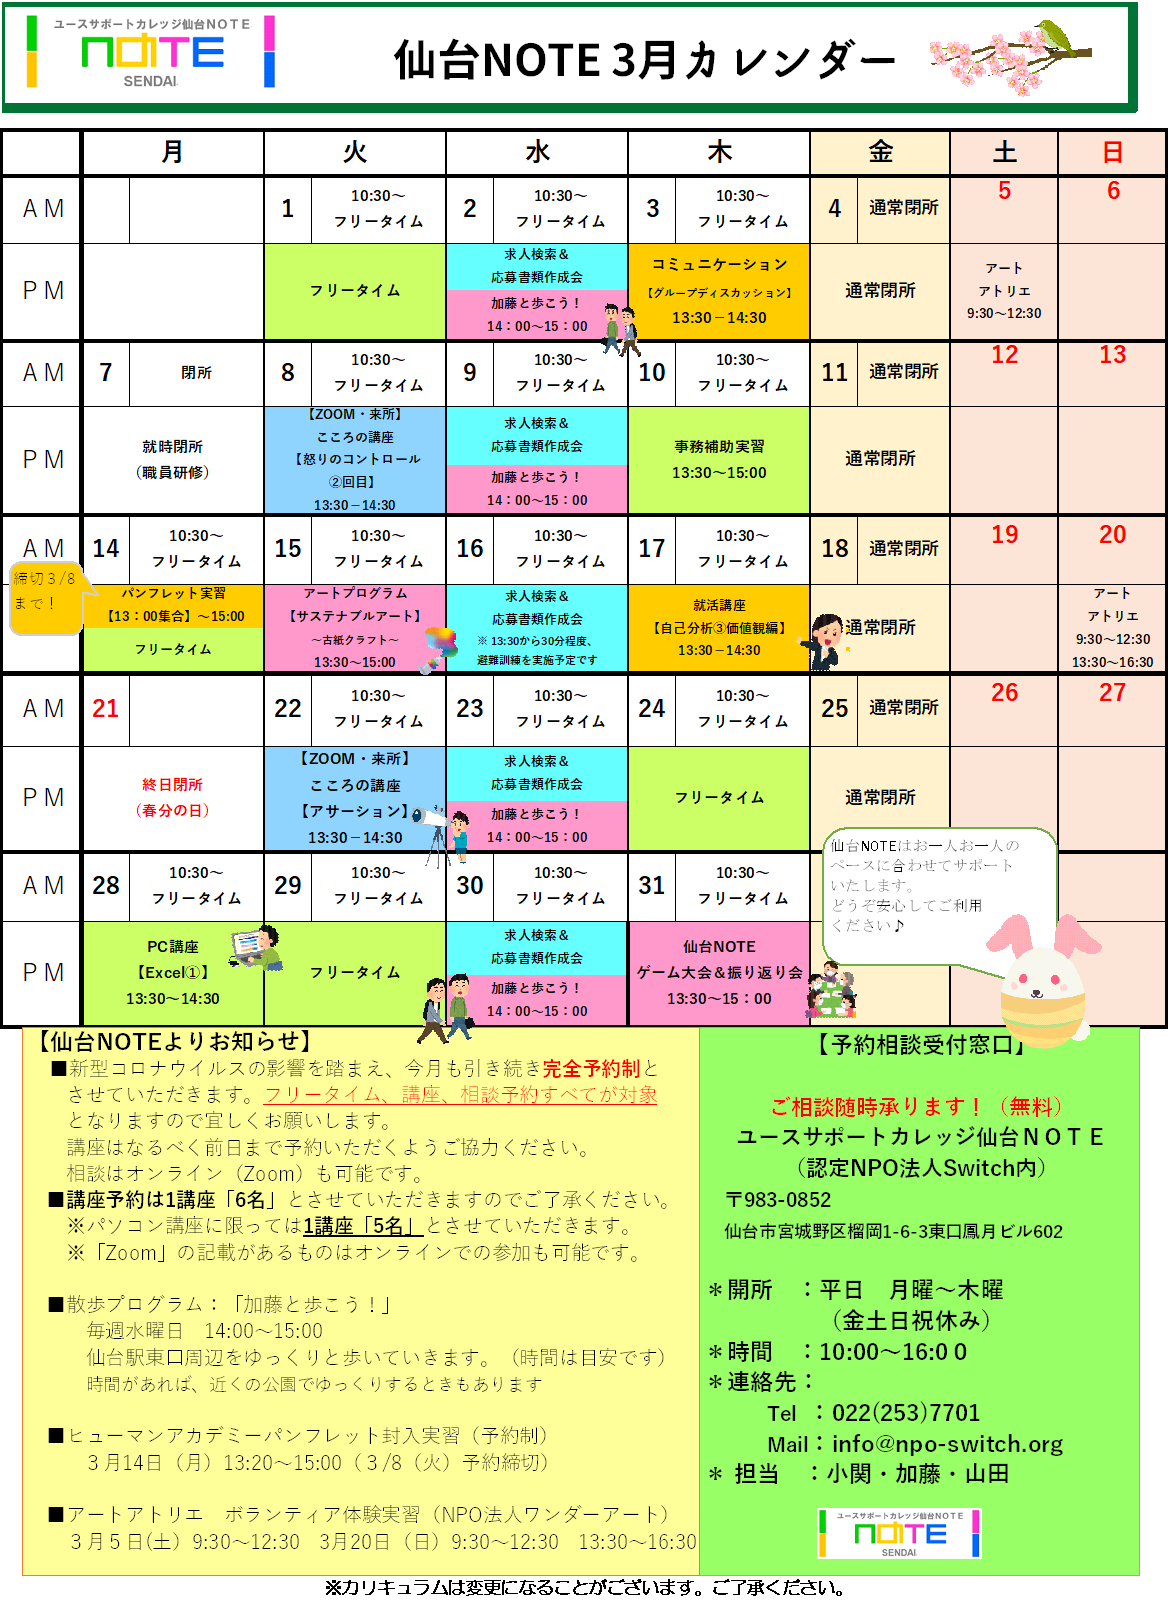 3月カレンダーのお知らせ 仙台noteブログ